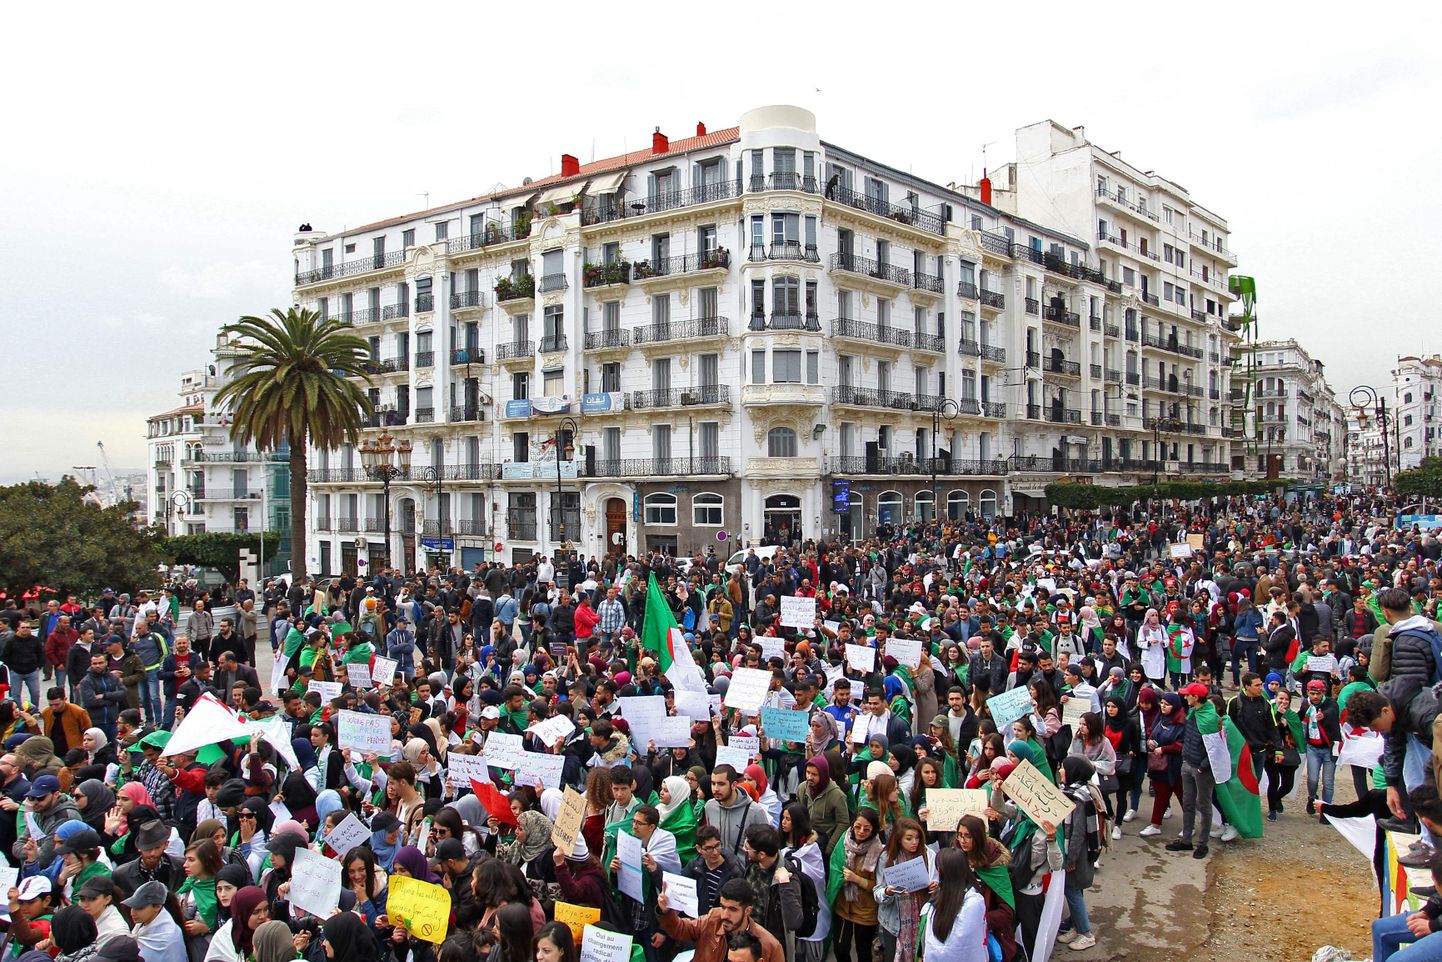 Alžeerlased protestimas president Abdelaziz Bouteflika ja tema režiimi vastu.